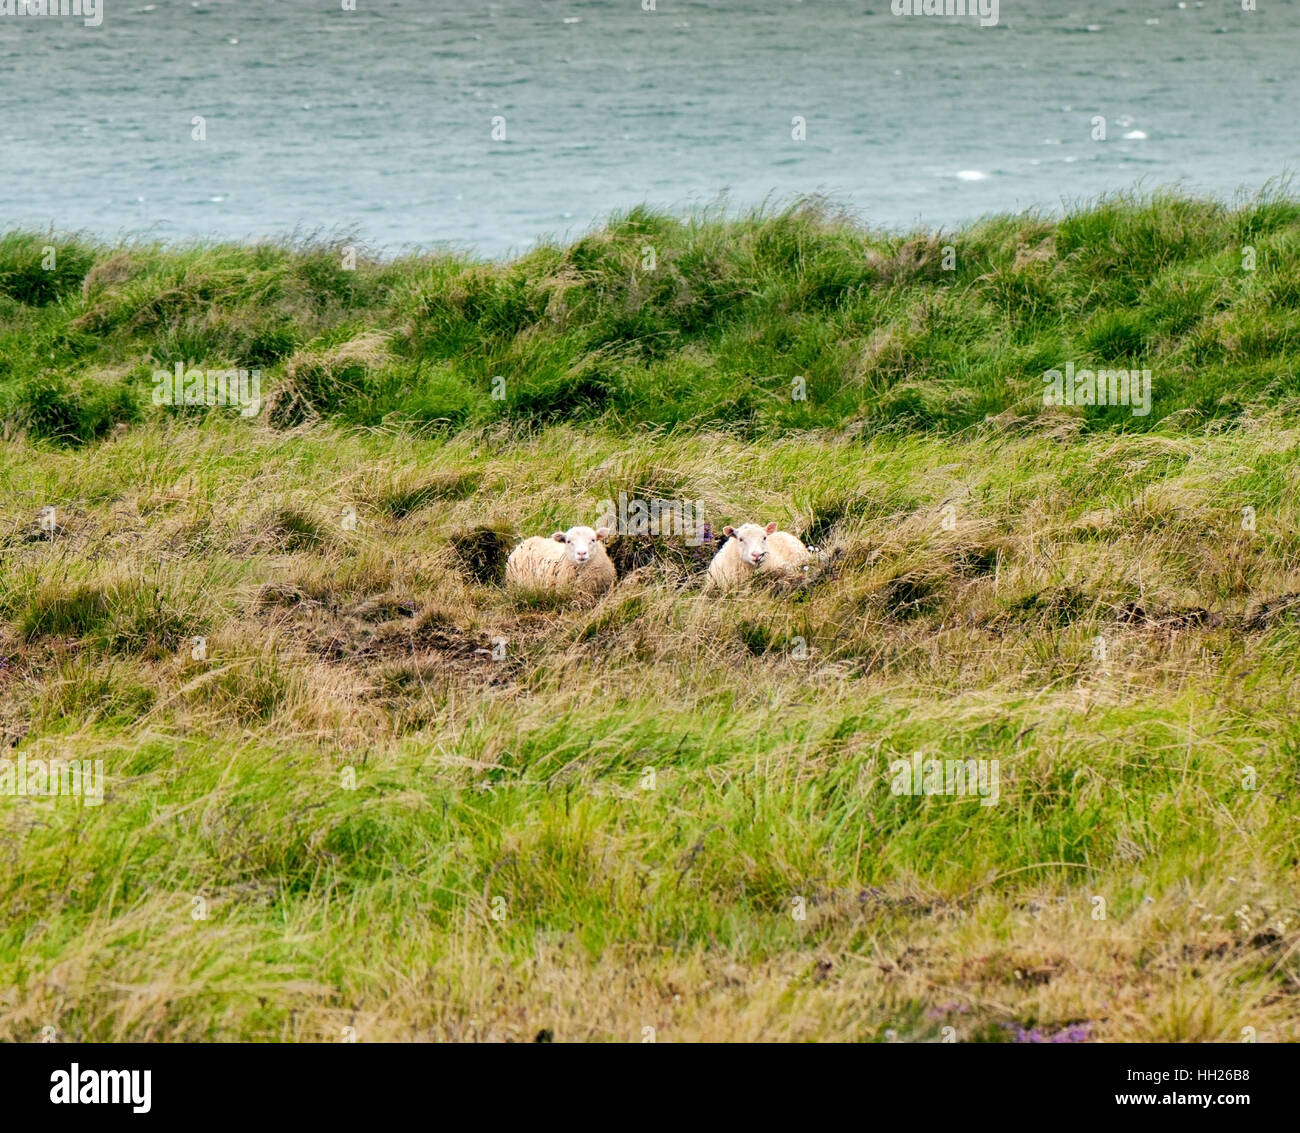 Deux moutons islandais se reposant dans l'herbe. Banque D'Images